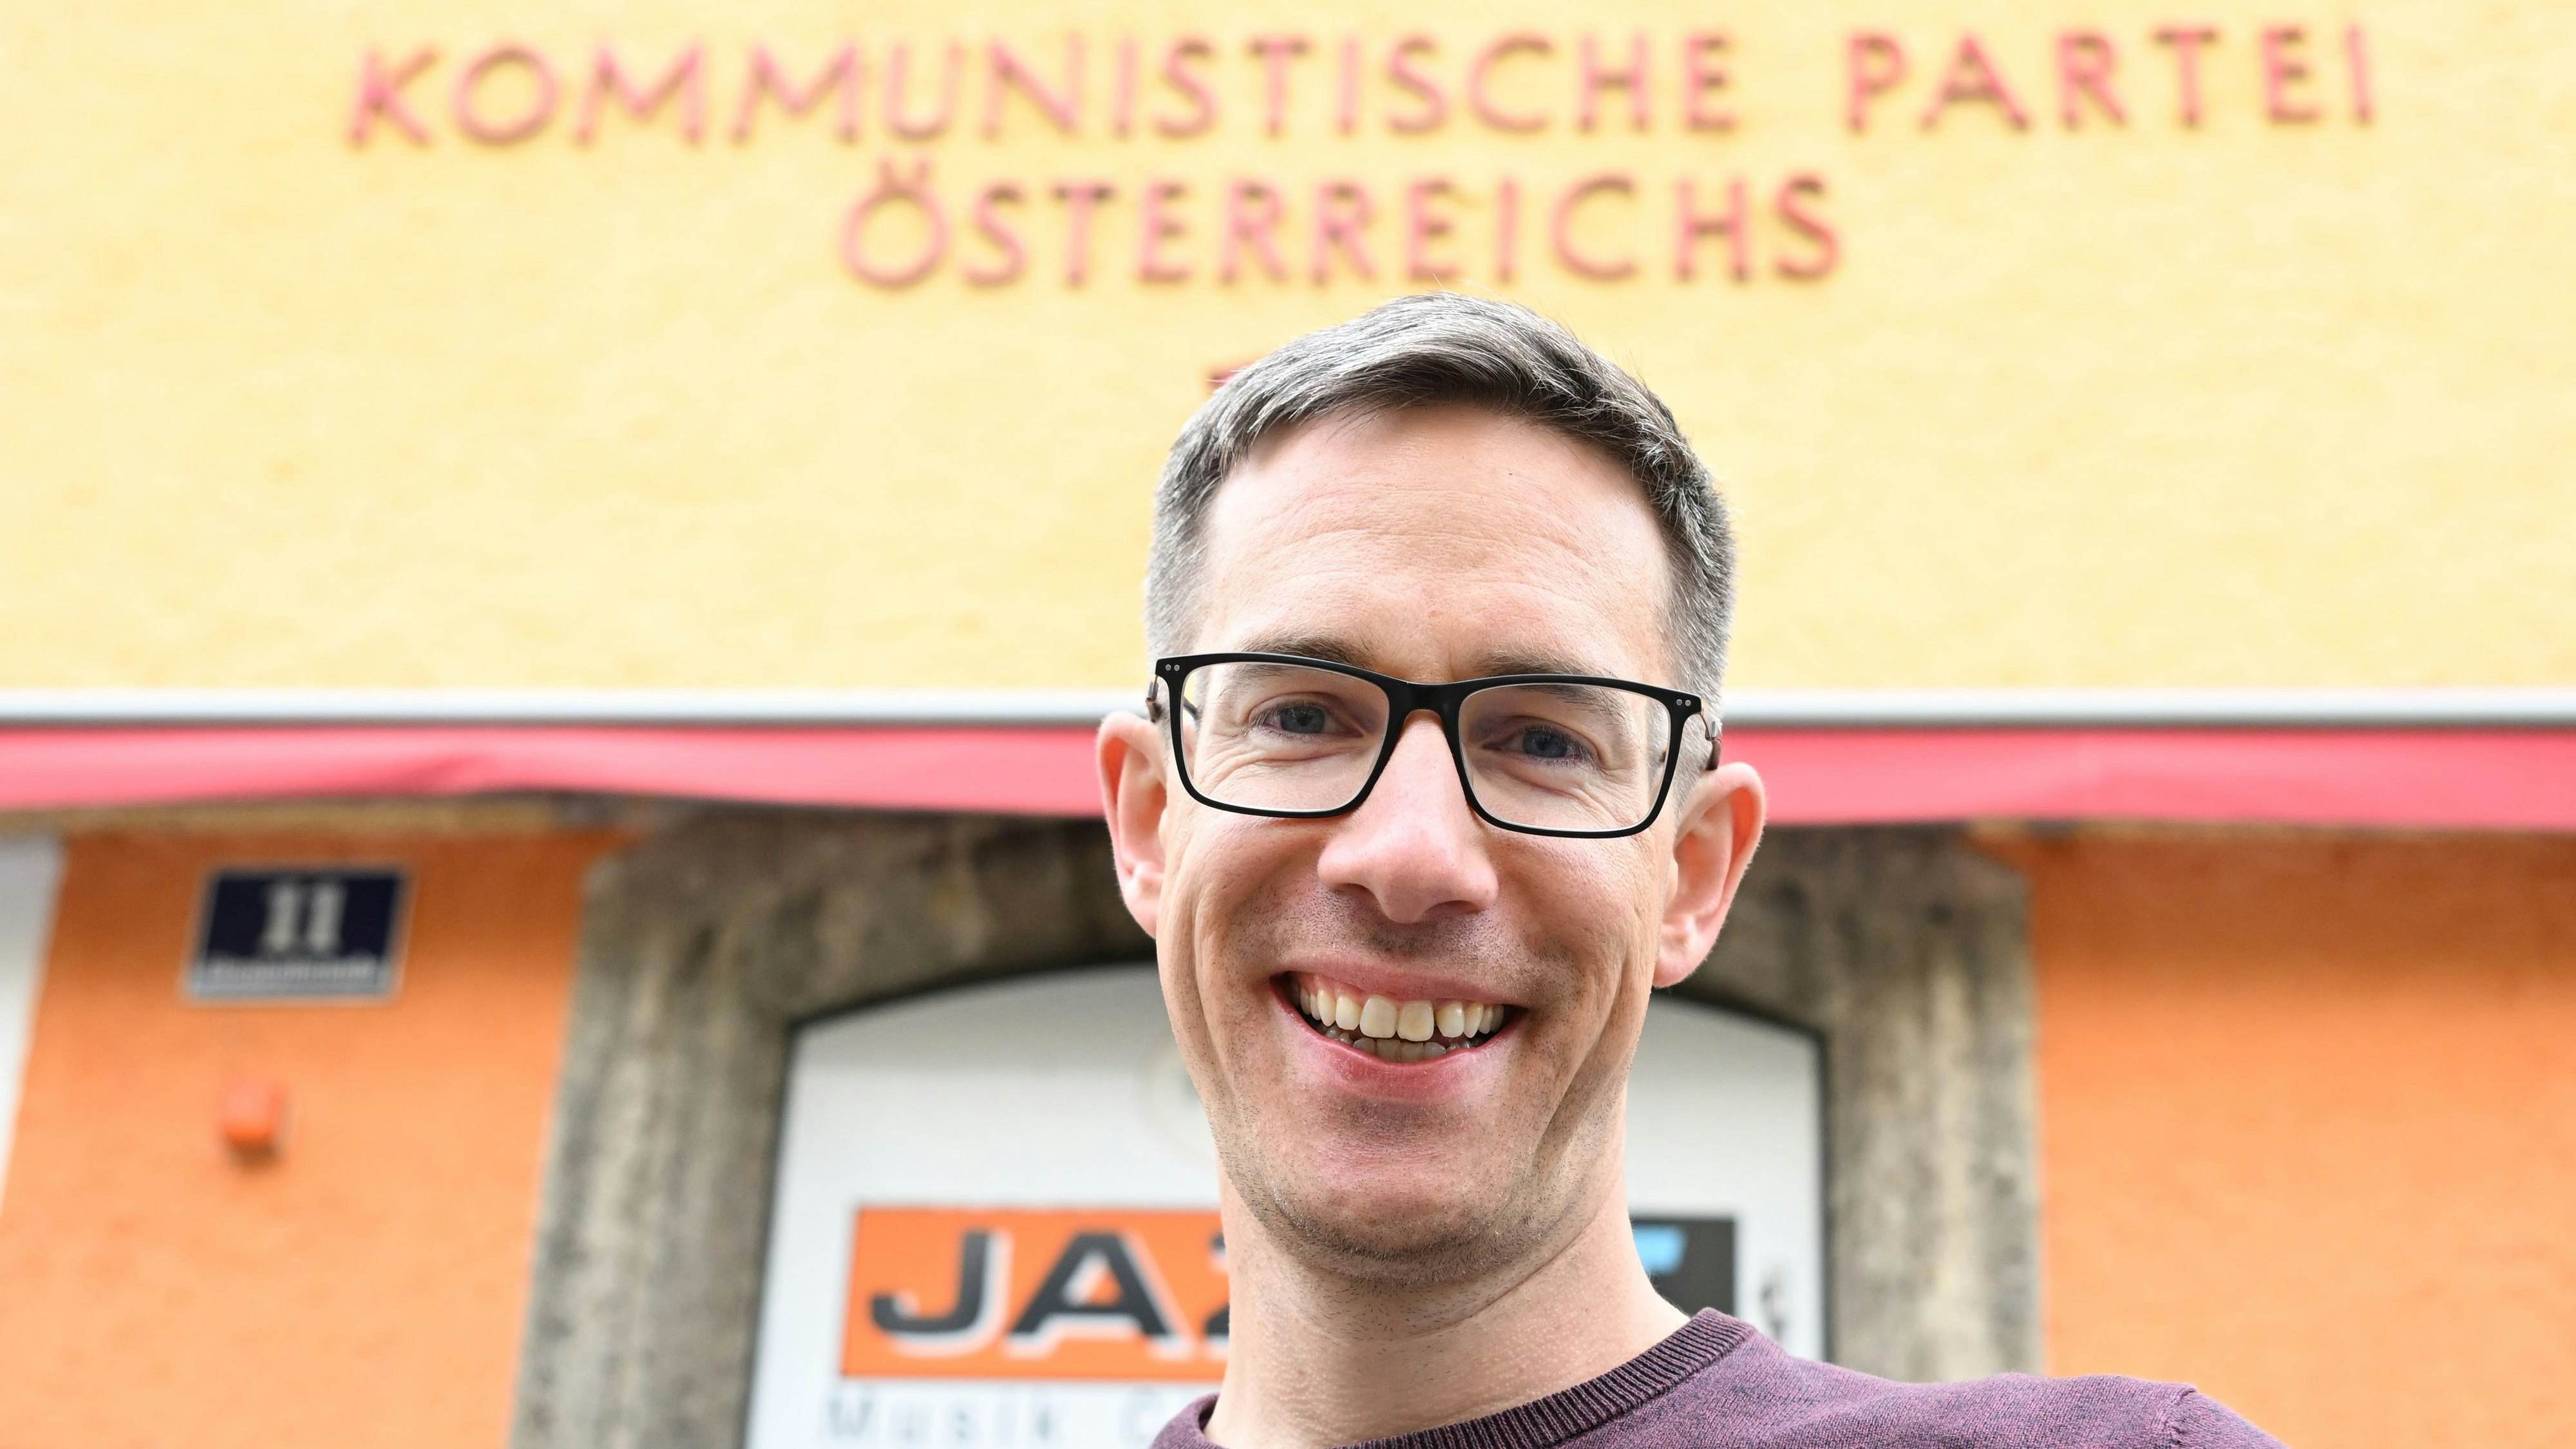 KPÖ Plus-Spitzenkandidat Kay-Michael Dankl vor der Parteizentrale der KPÖ in Salzburg